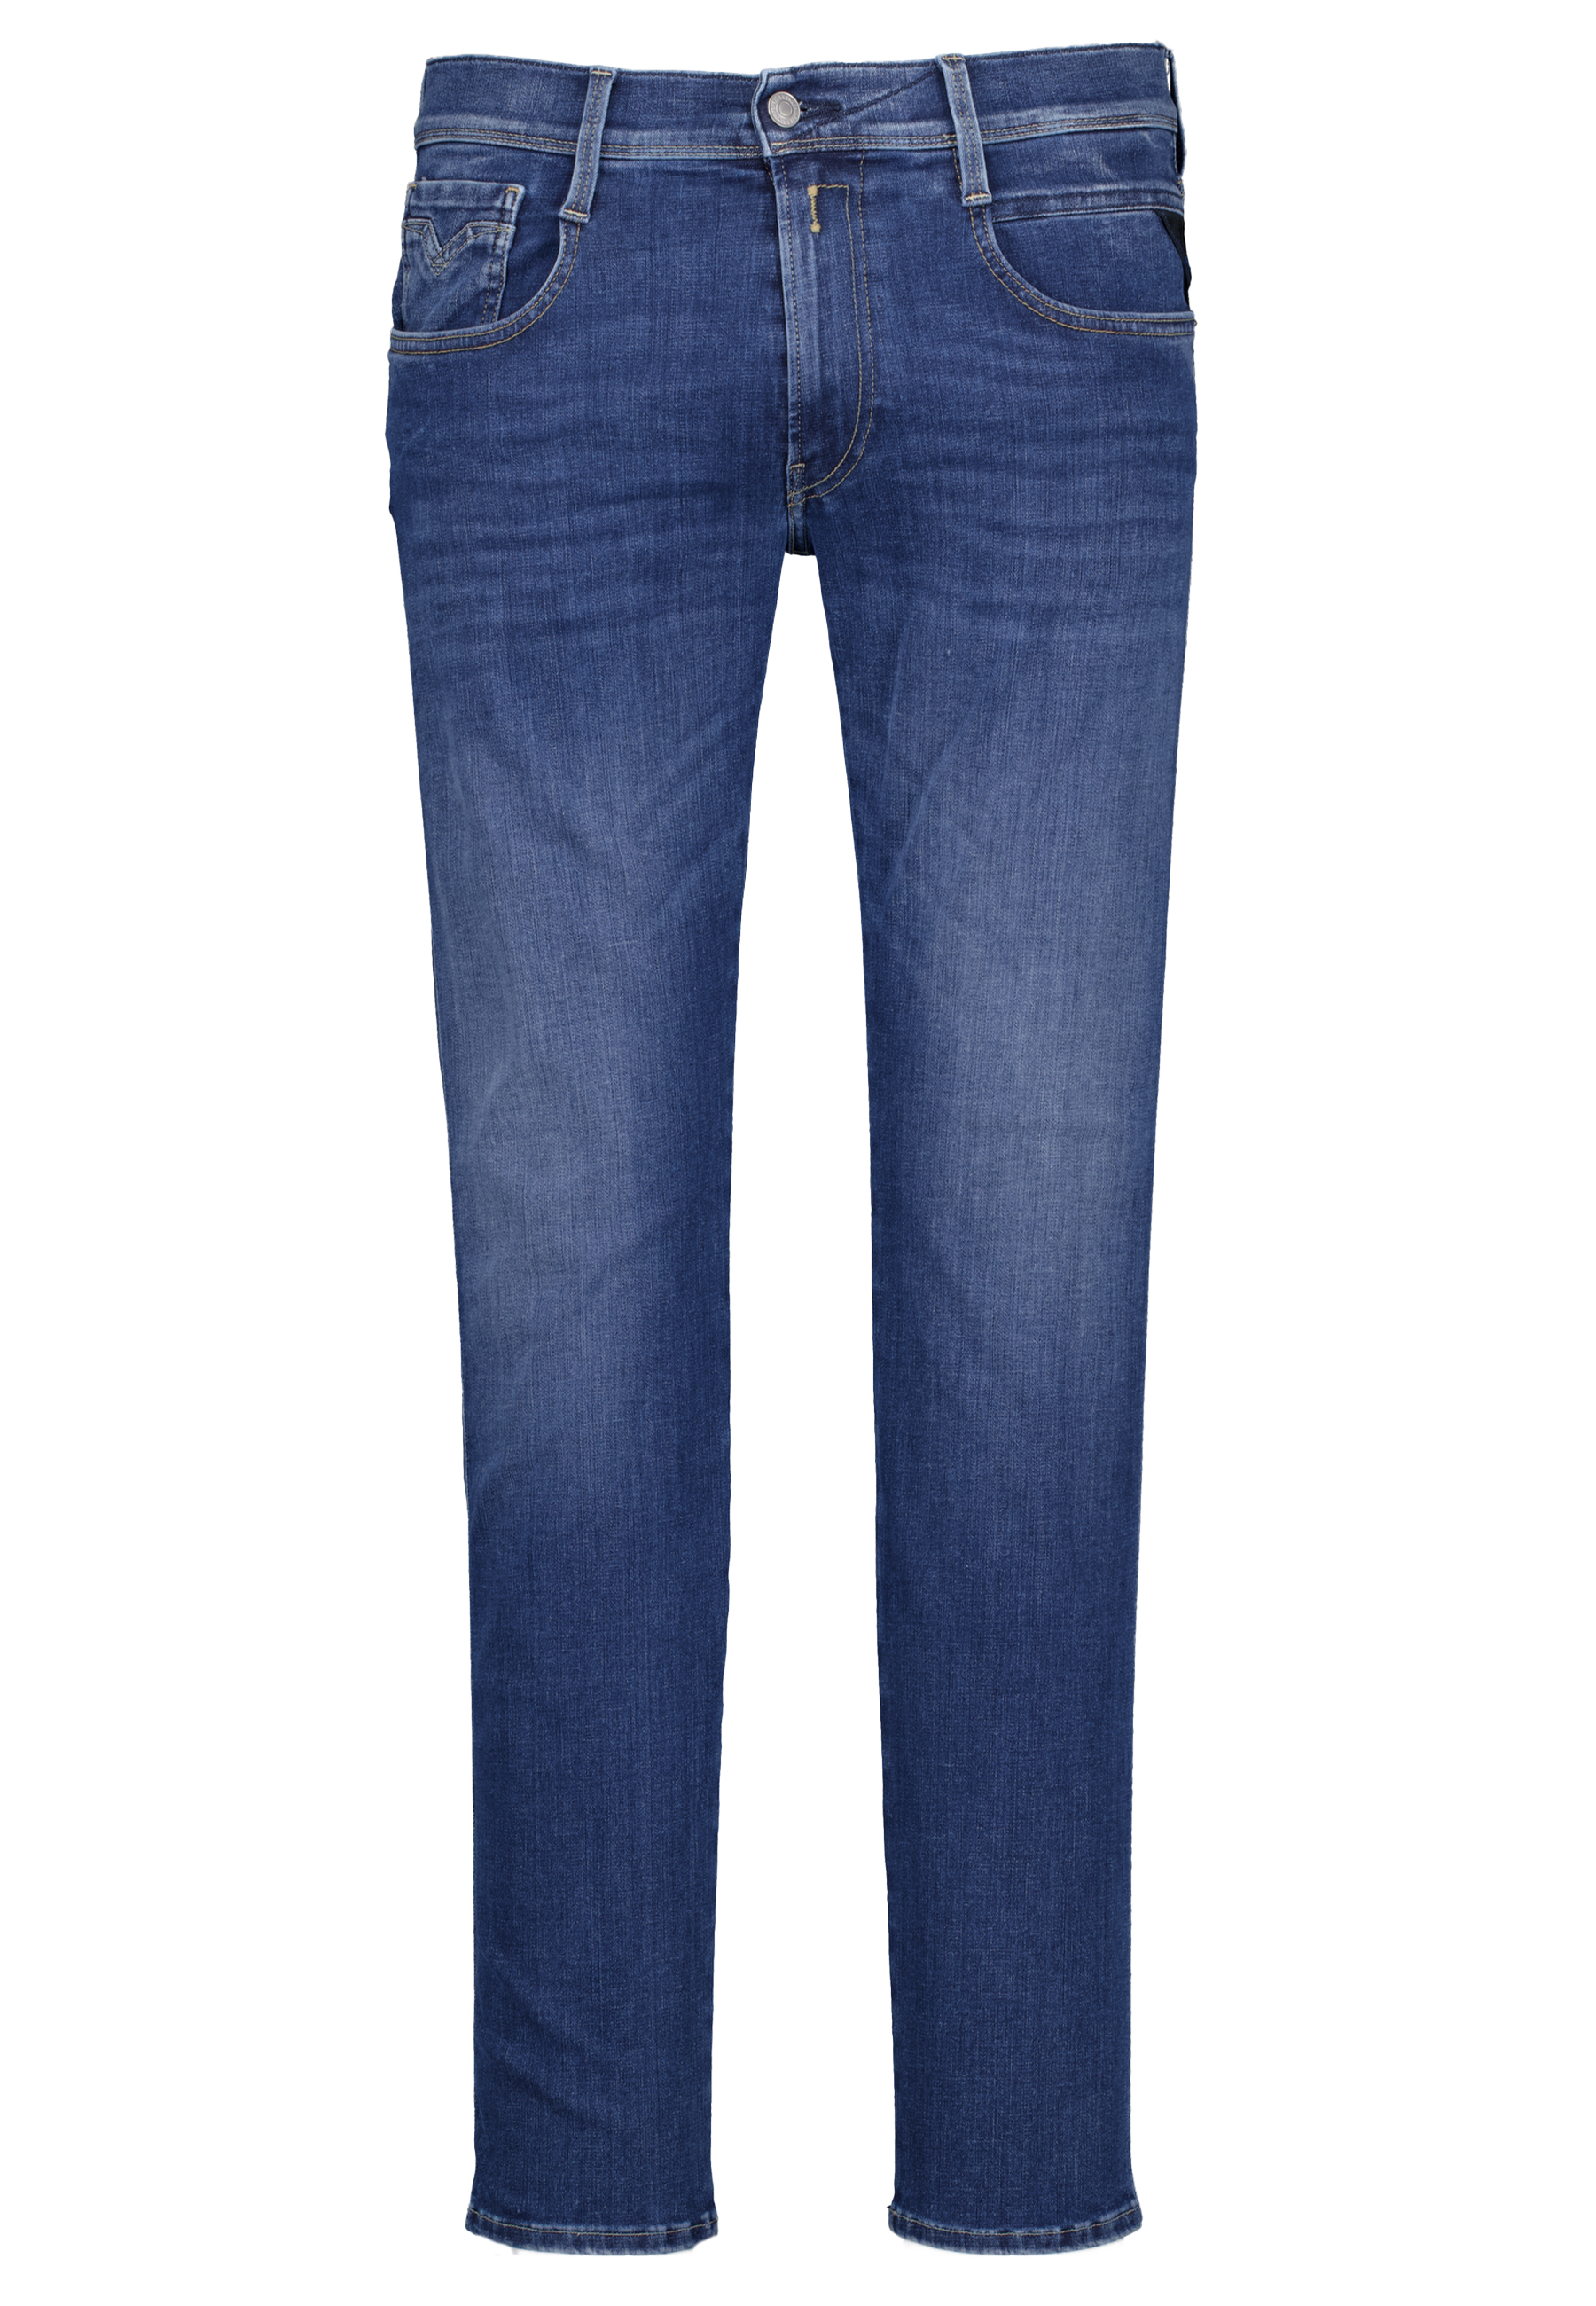 Replay jeans blauw Heren maat 29/32